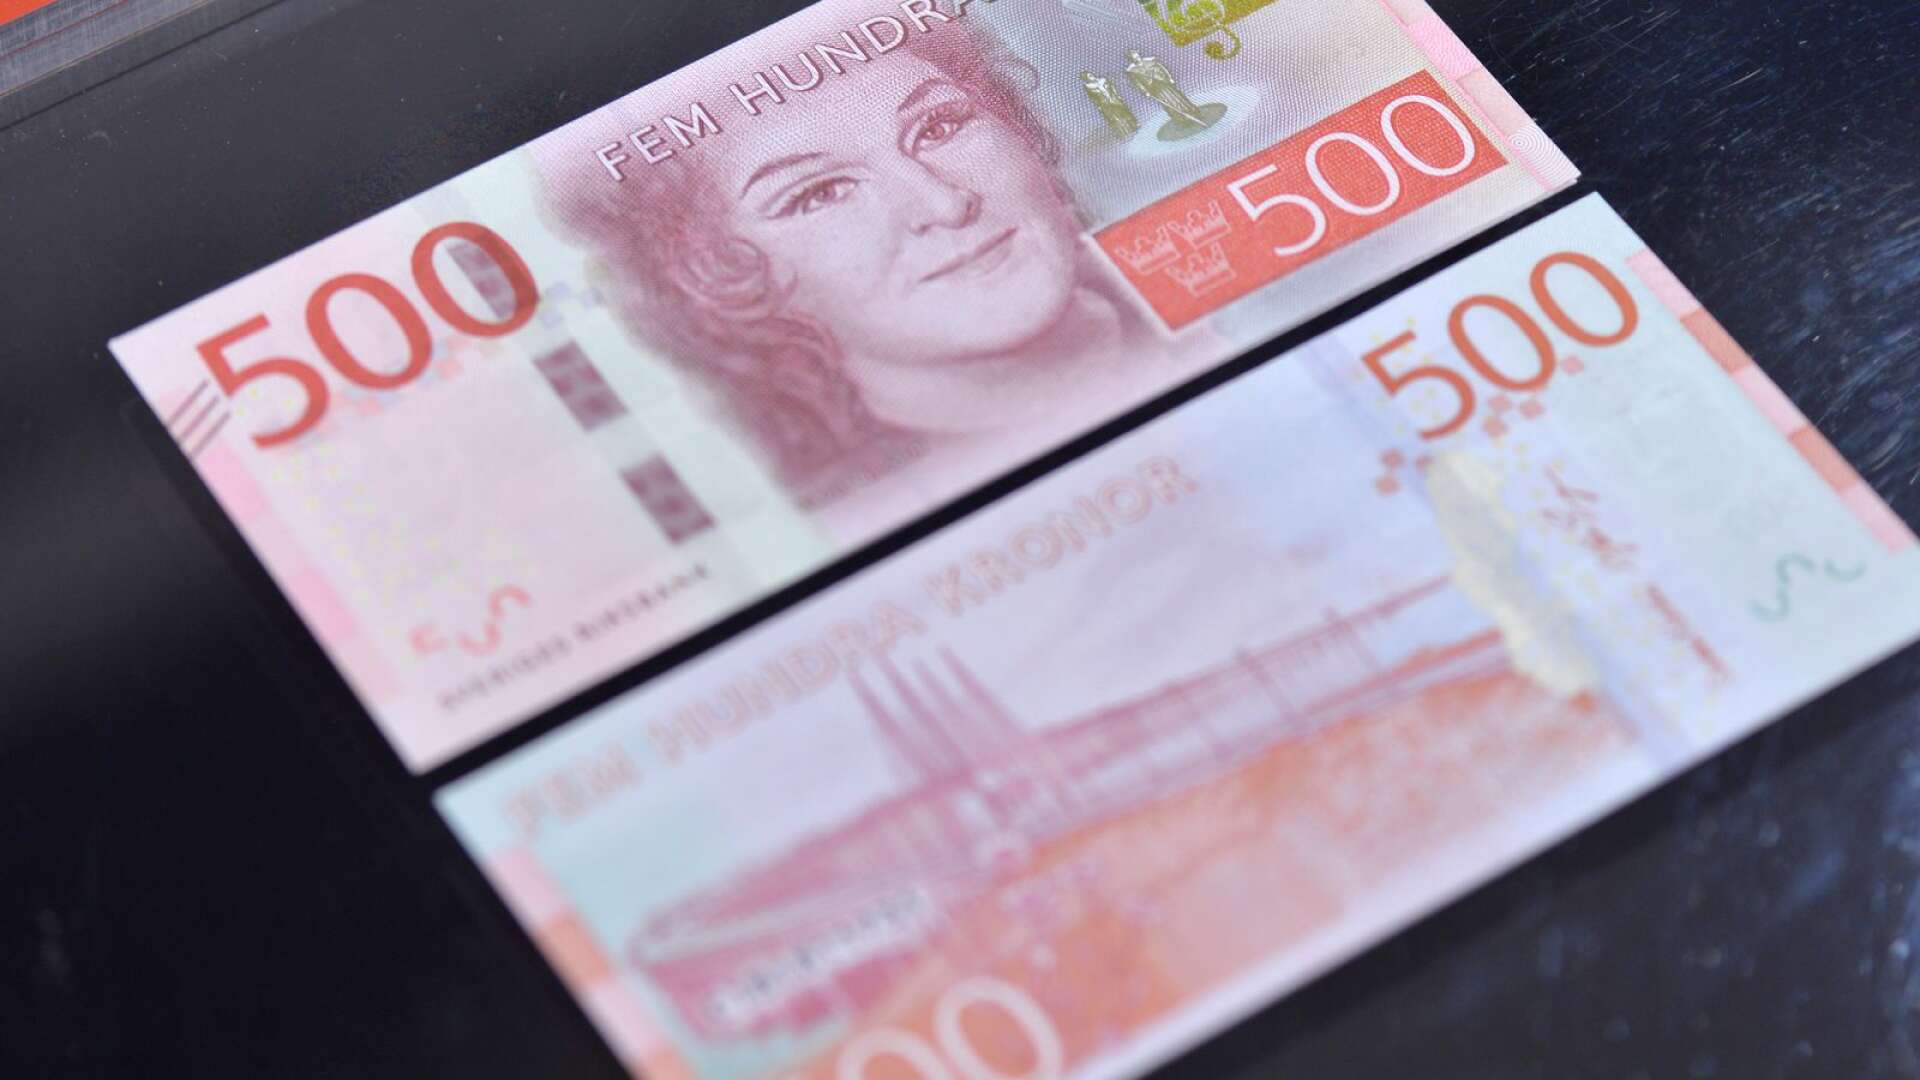 Polisen har fått flera anmälningar om falska sedlar i västra Skaraborg. Främst har det handlat om 500-kronorssedlar som kunder använt vid betalning på restauranger, bensinstationer och affärer.